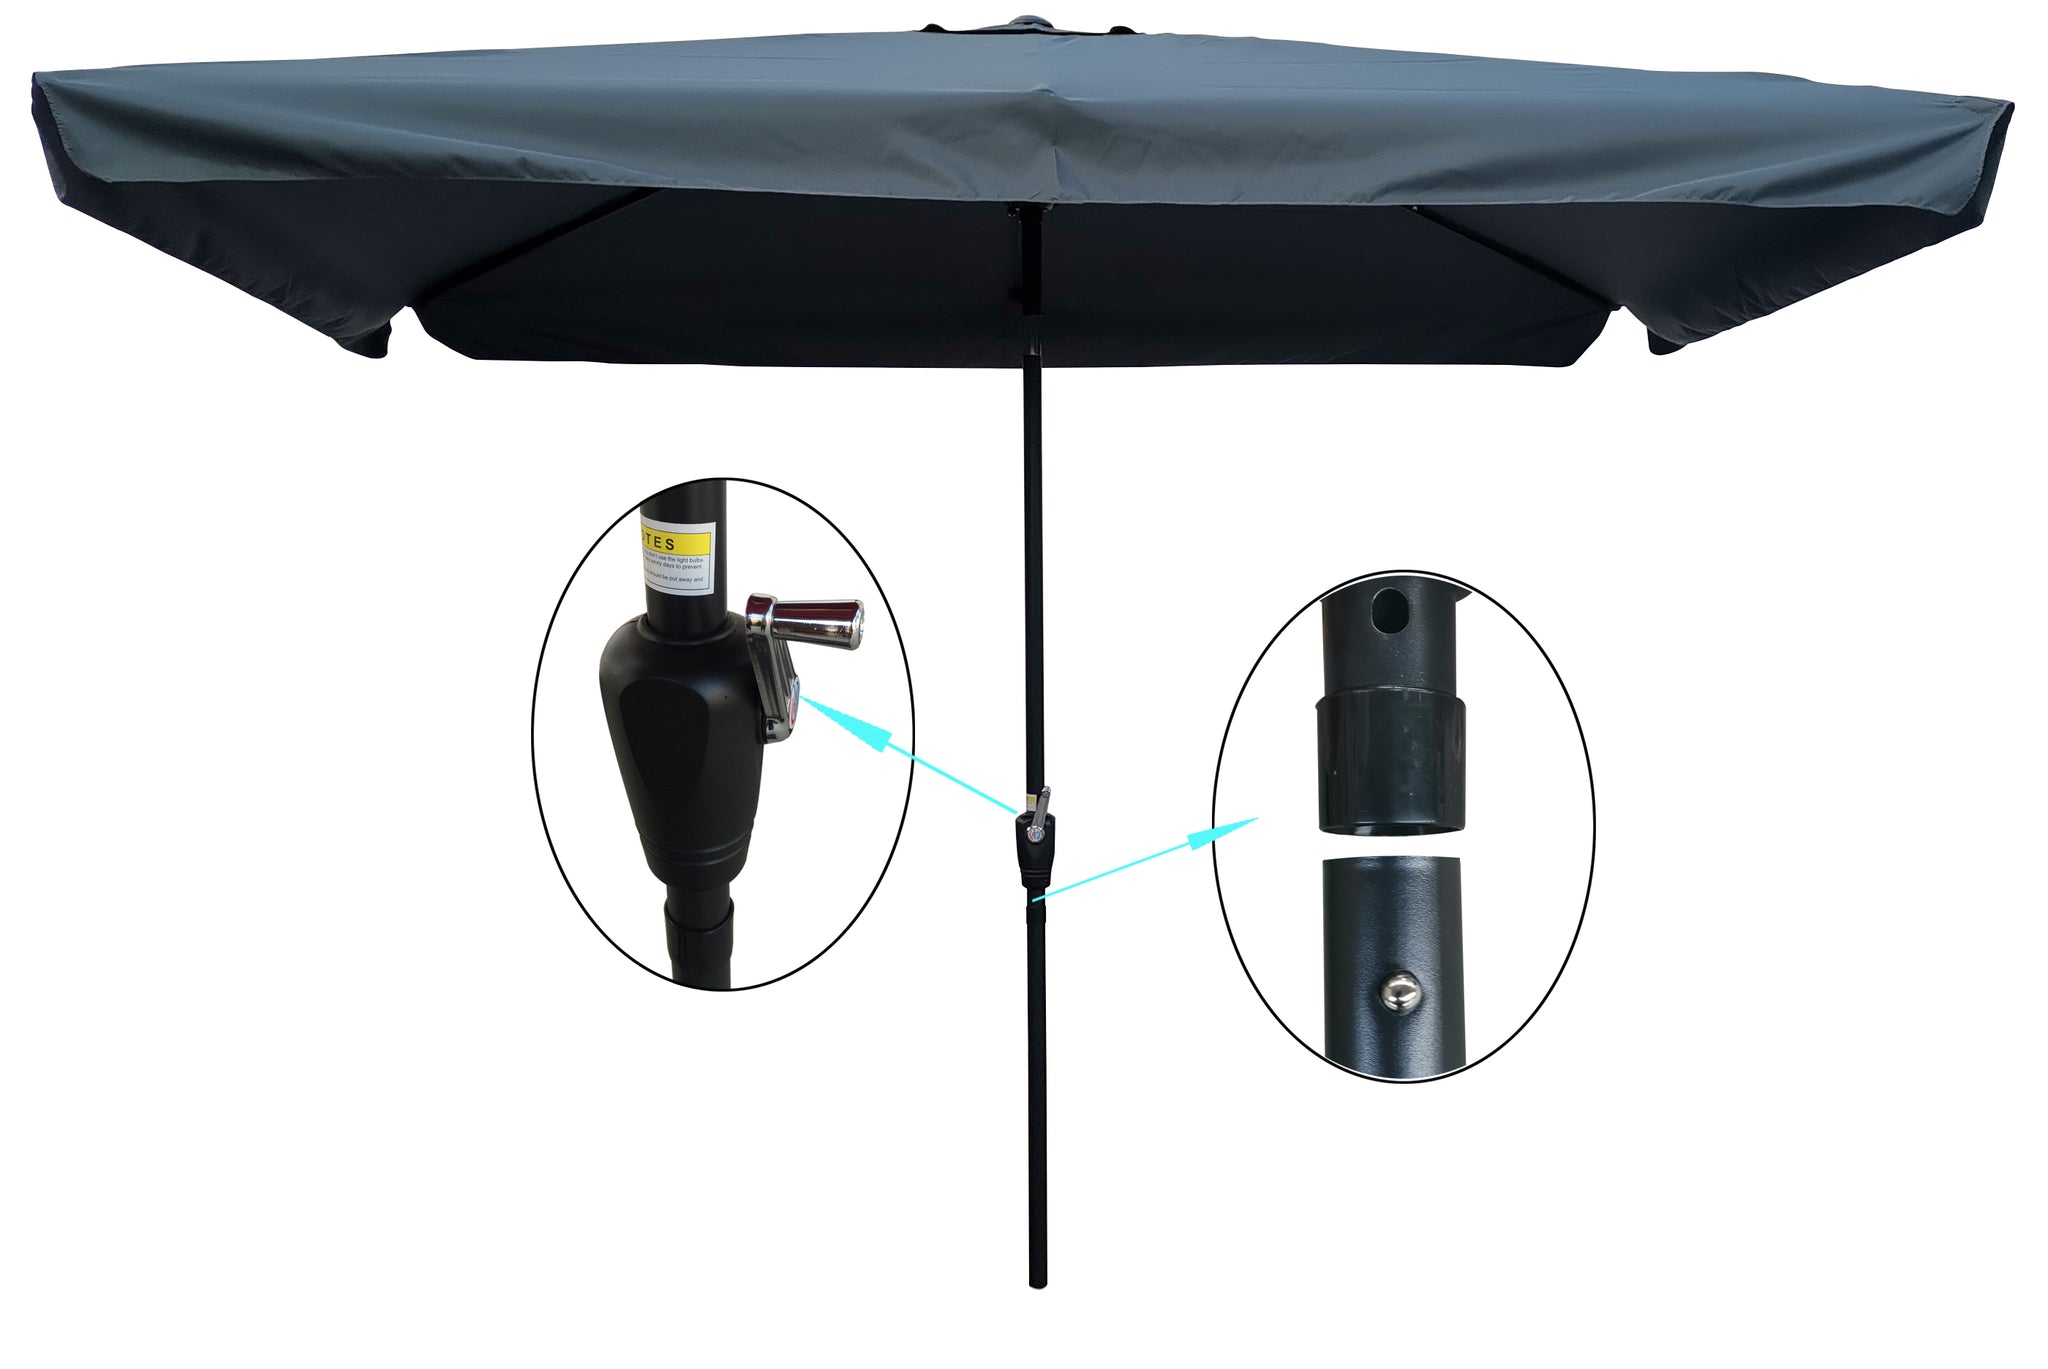 10 x 6.5ft Patio Umbrella Outdoor Waterproof Umbrella gray-metal